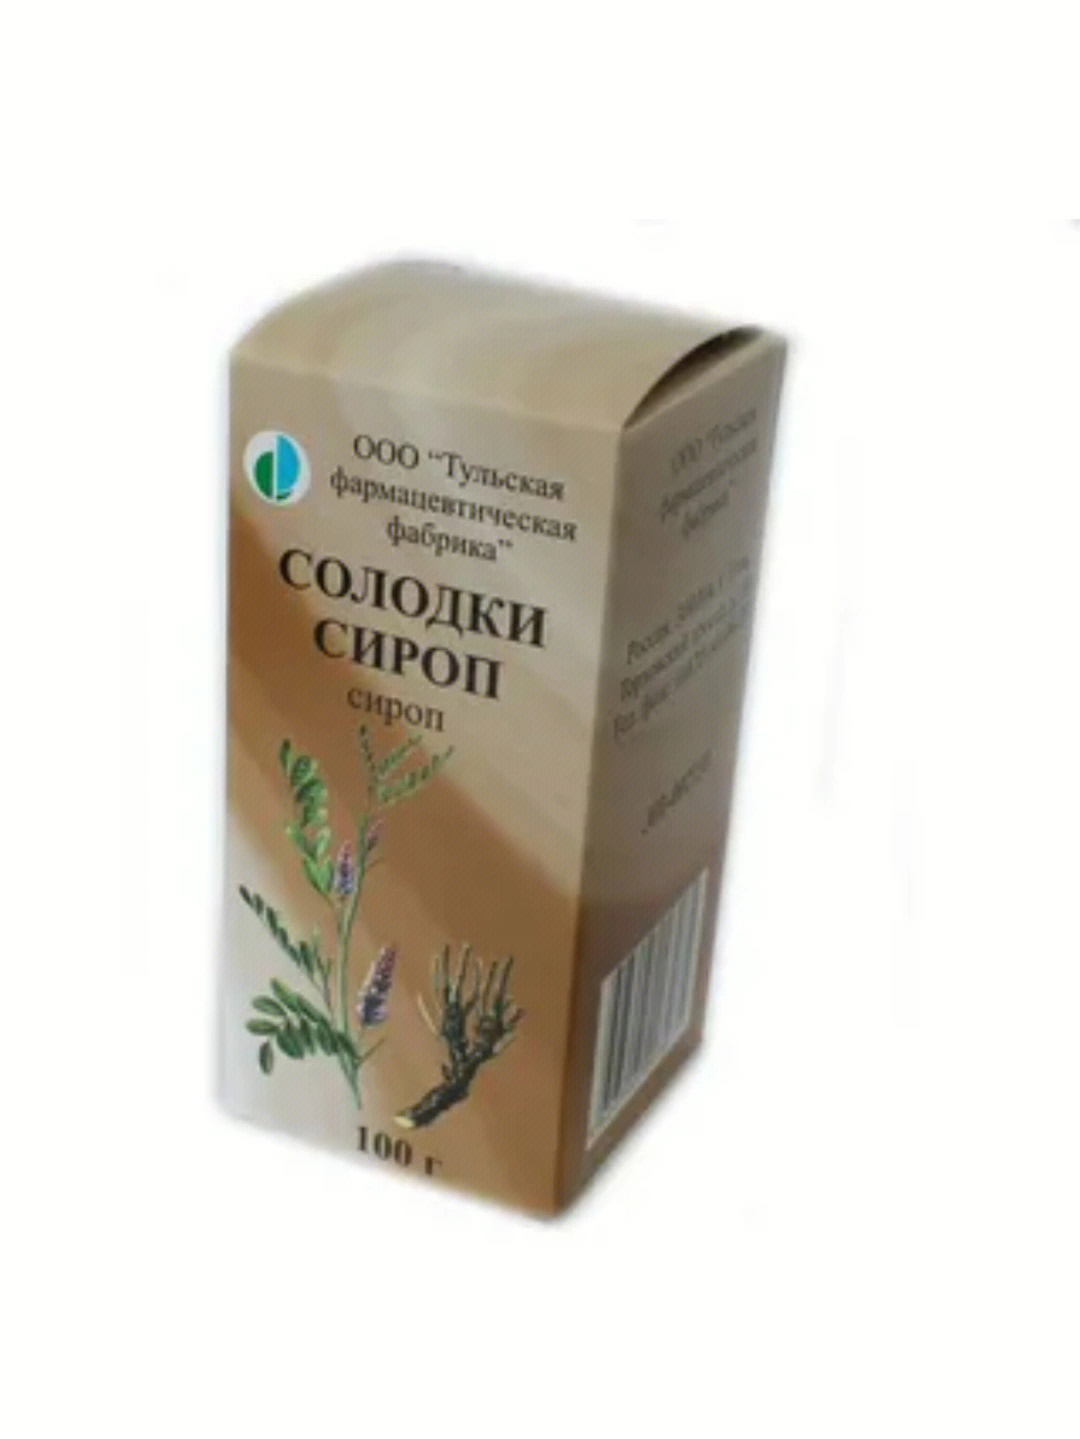 俄罗斯9396药品指南止咳篇(新冠轻症)